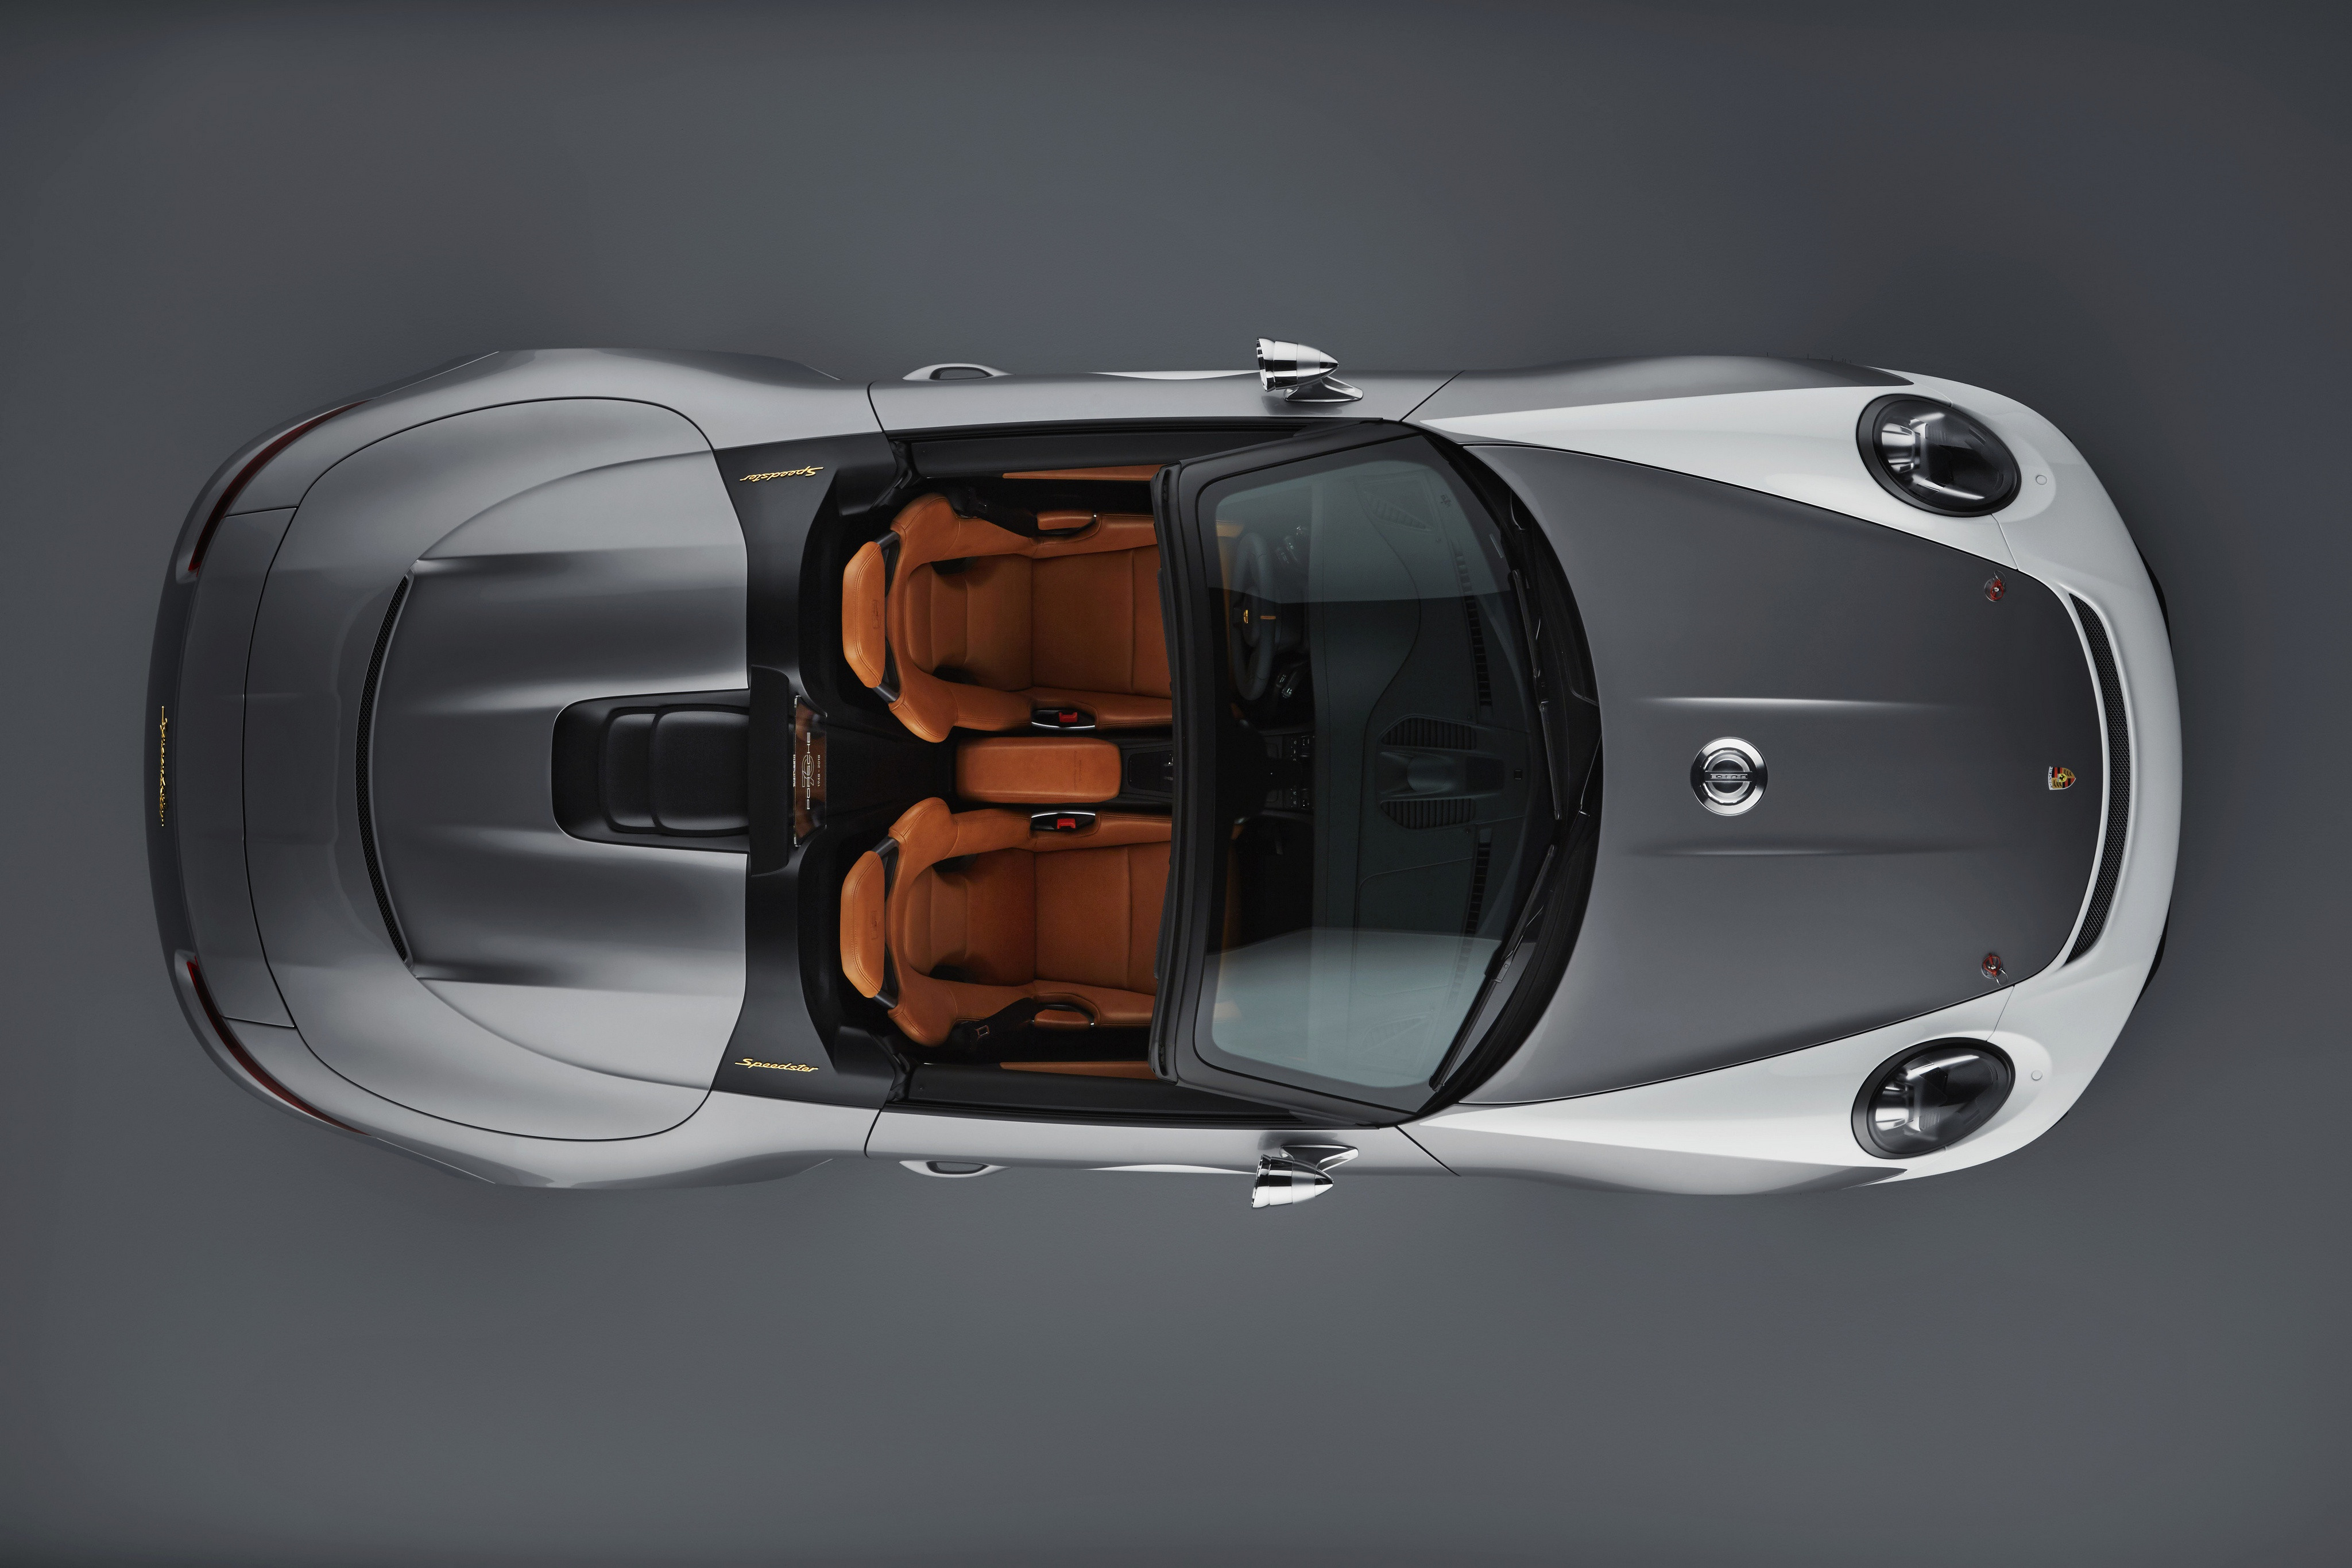 The porsche 911 speedster sports convertible view